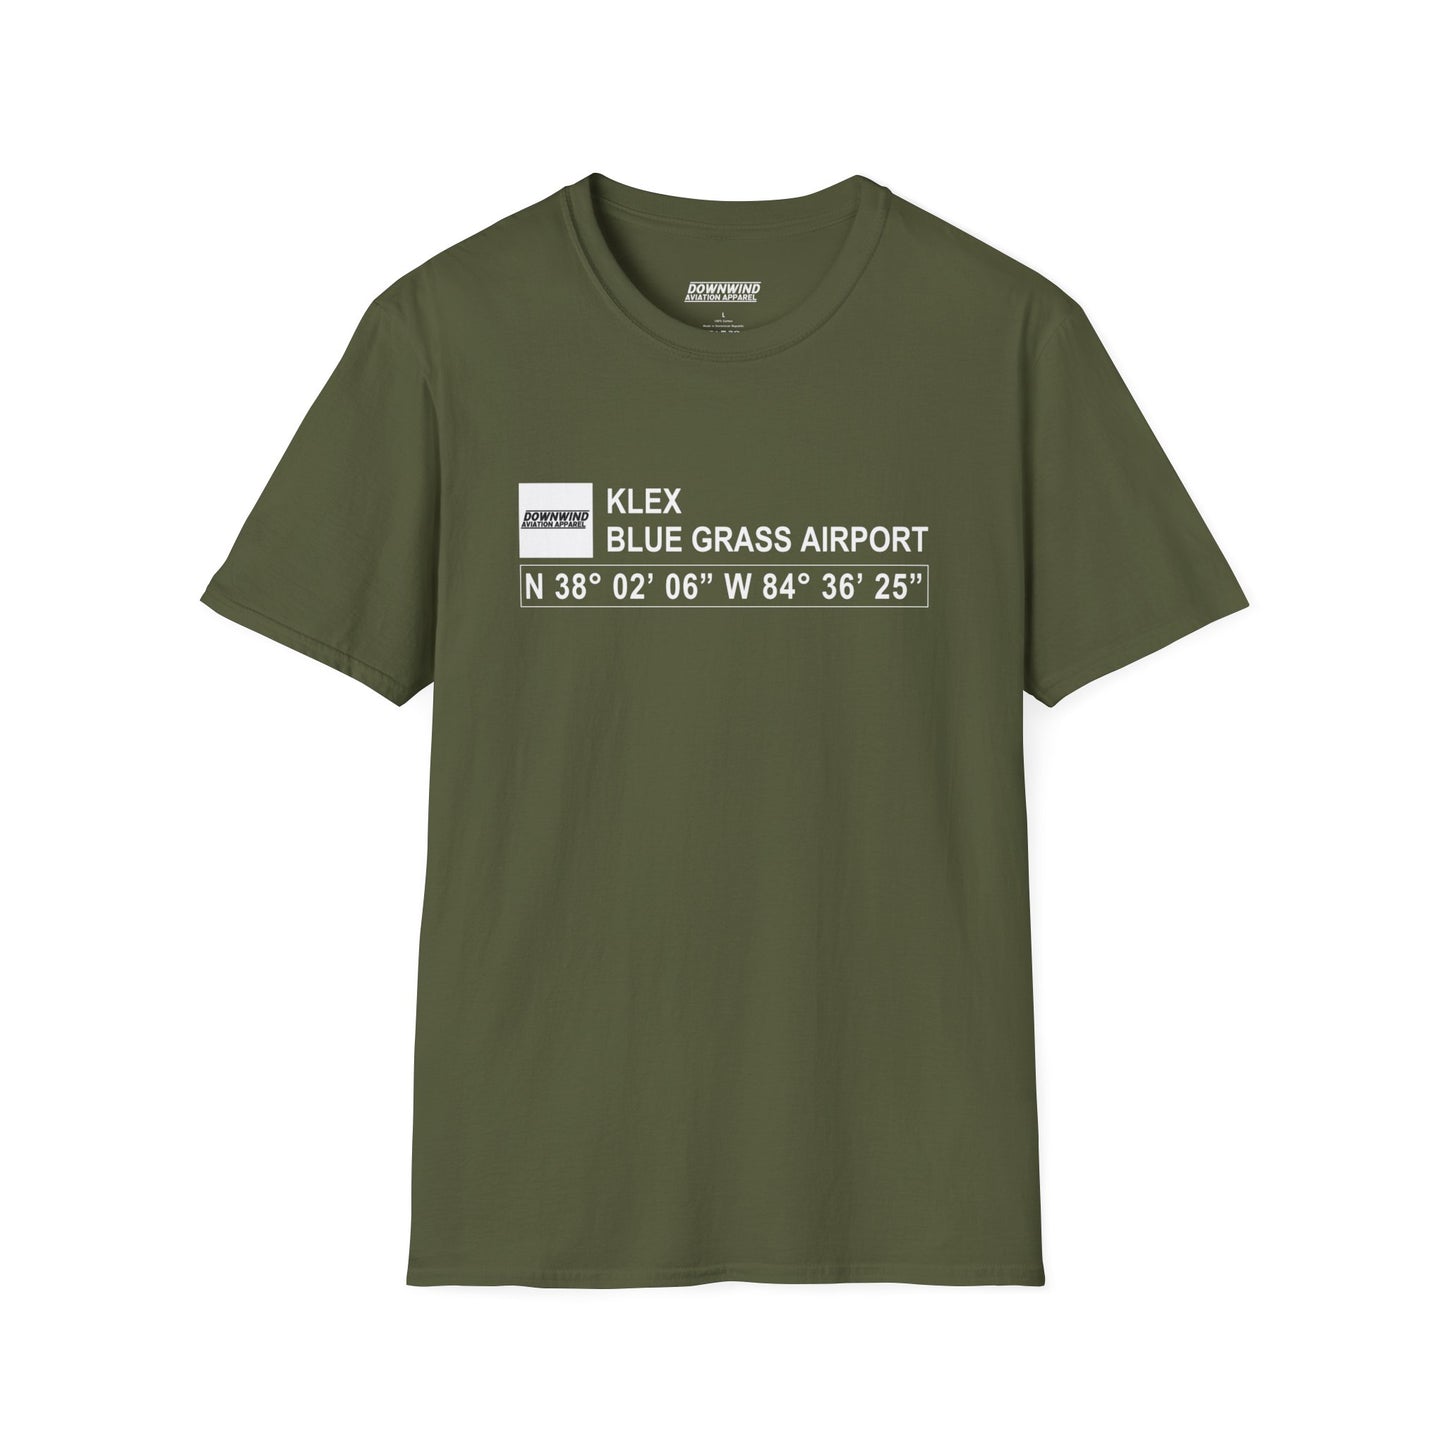 KLEX / Blue Grass Airport T-Shirt